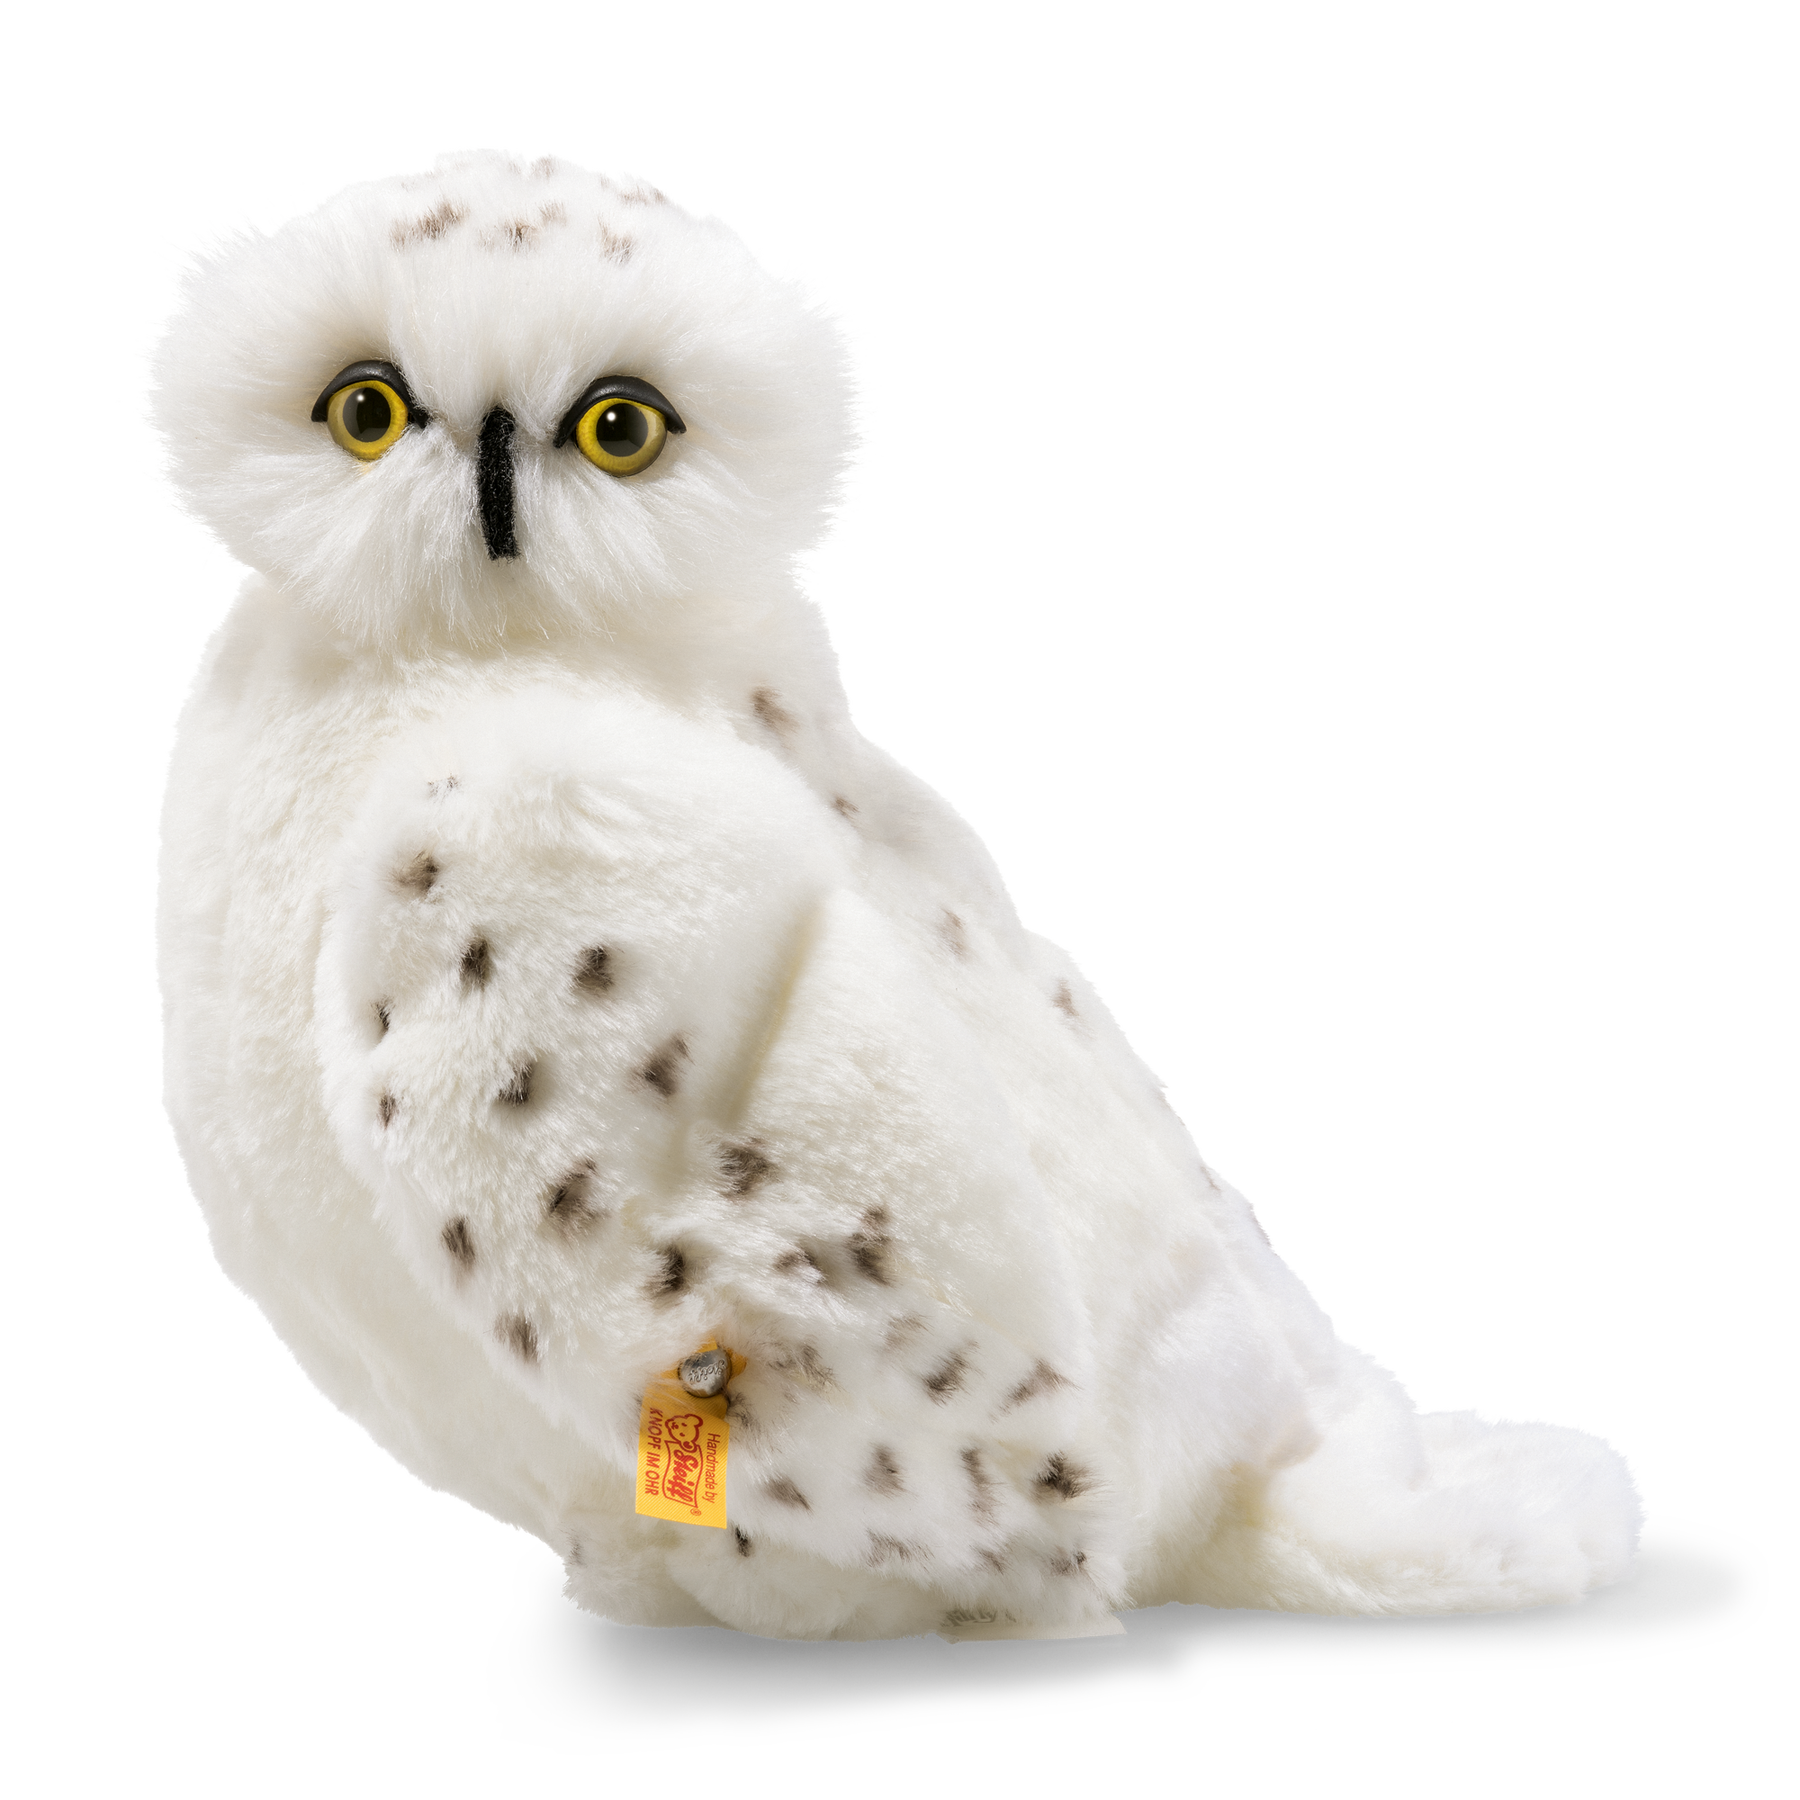 STEIFF Hedwig Owl Keyring Harry Potter EAN 355103 9cm White Handbag charm NEW 